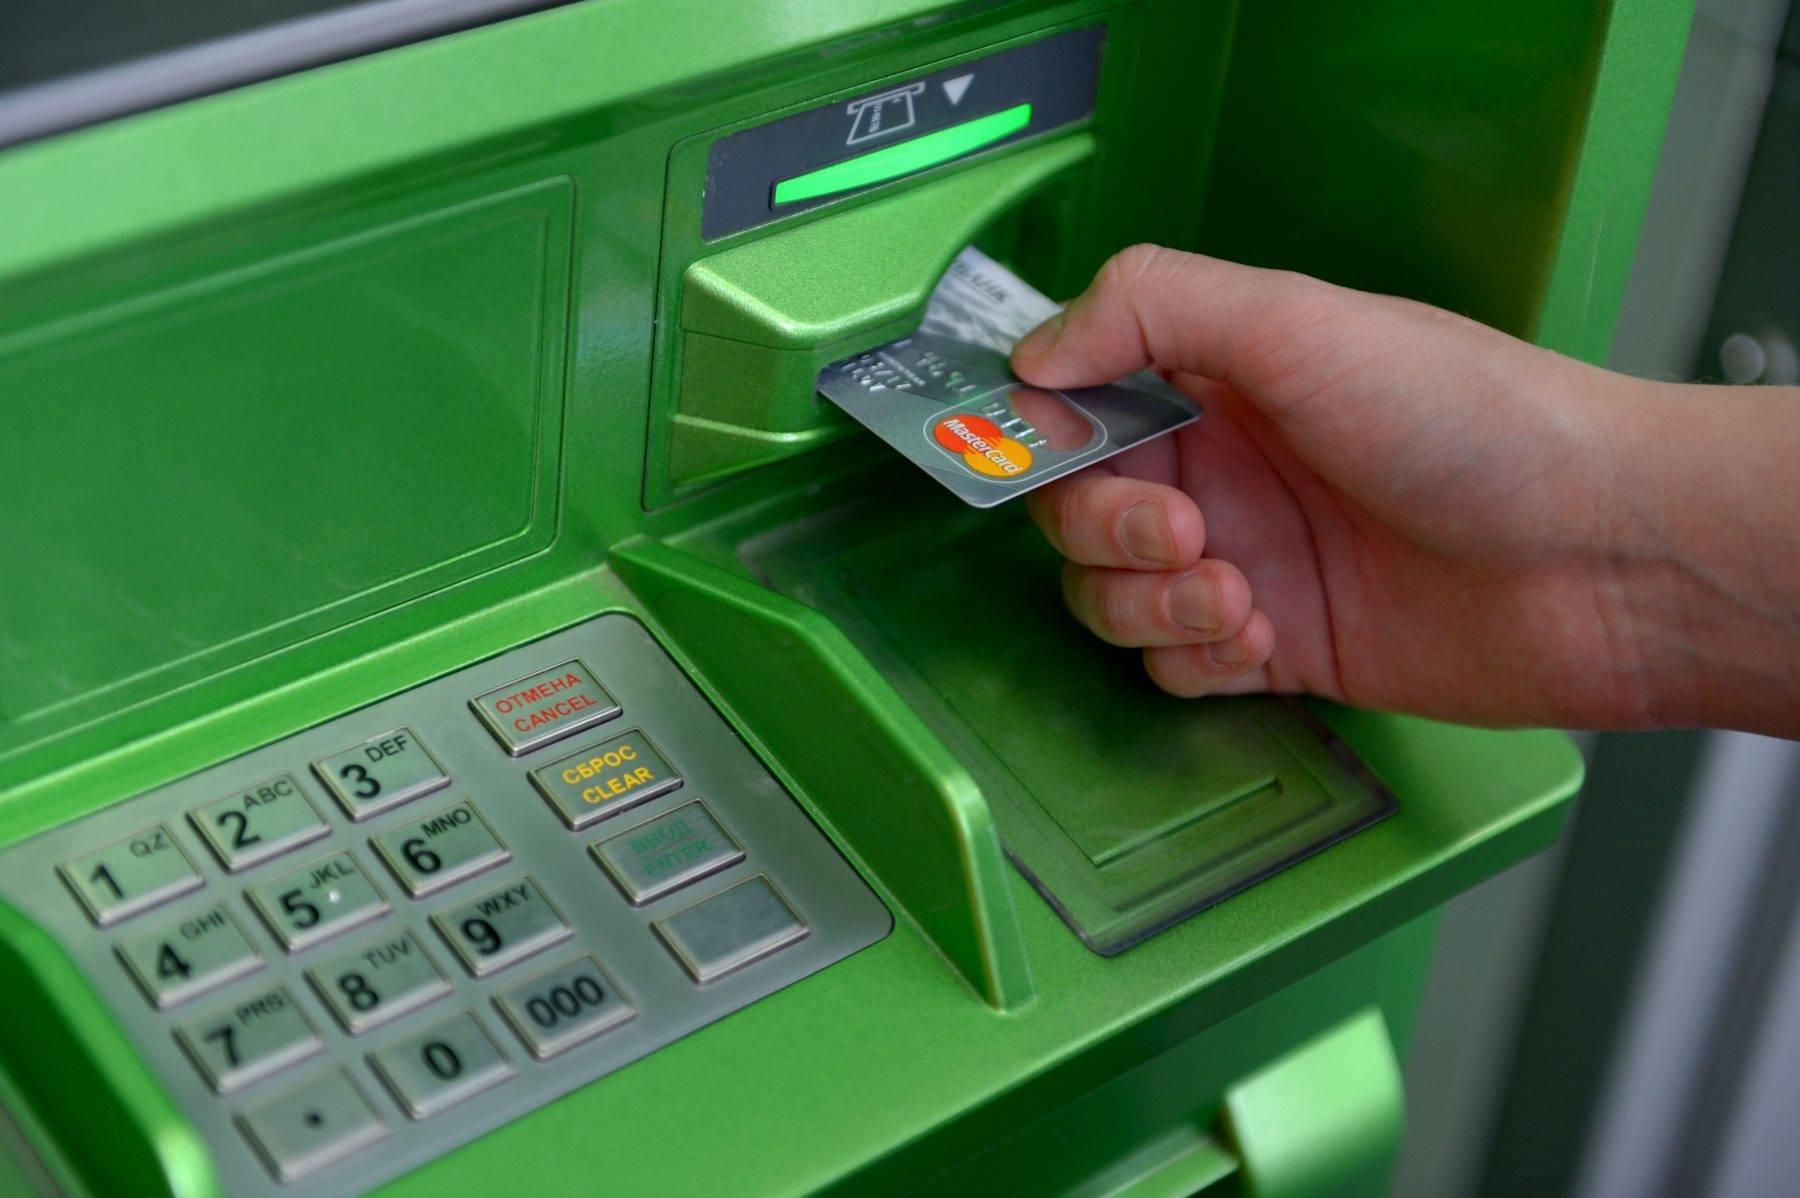 Что делать, если забыл пин-код банковской карты? Где его можно узнать?